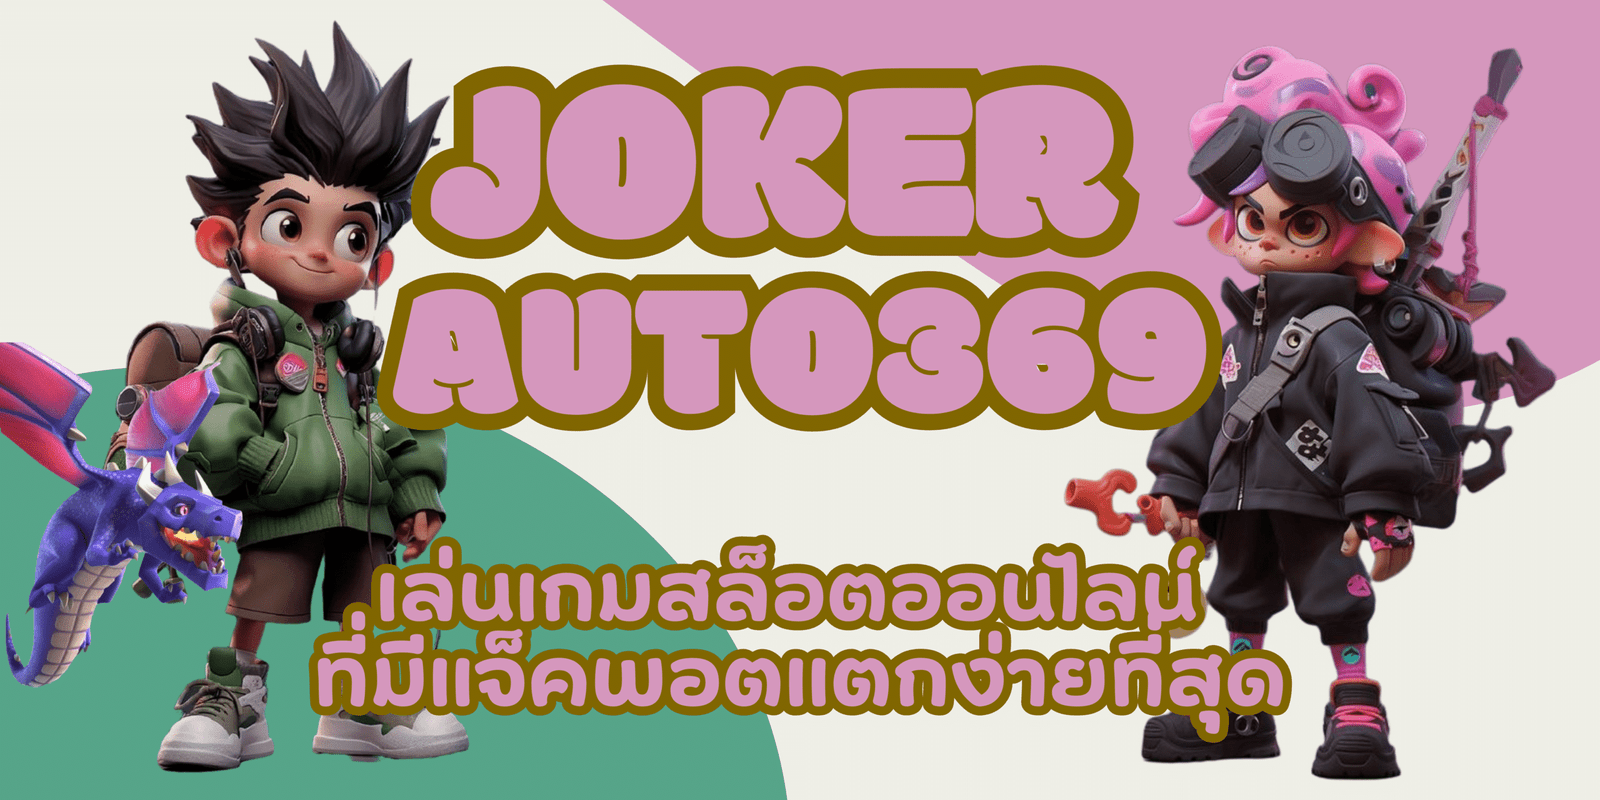 joker-auto369-แจ็คพอตแตกง่าย